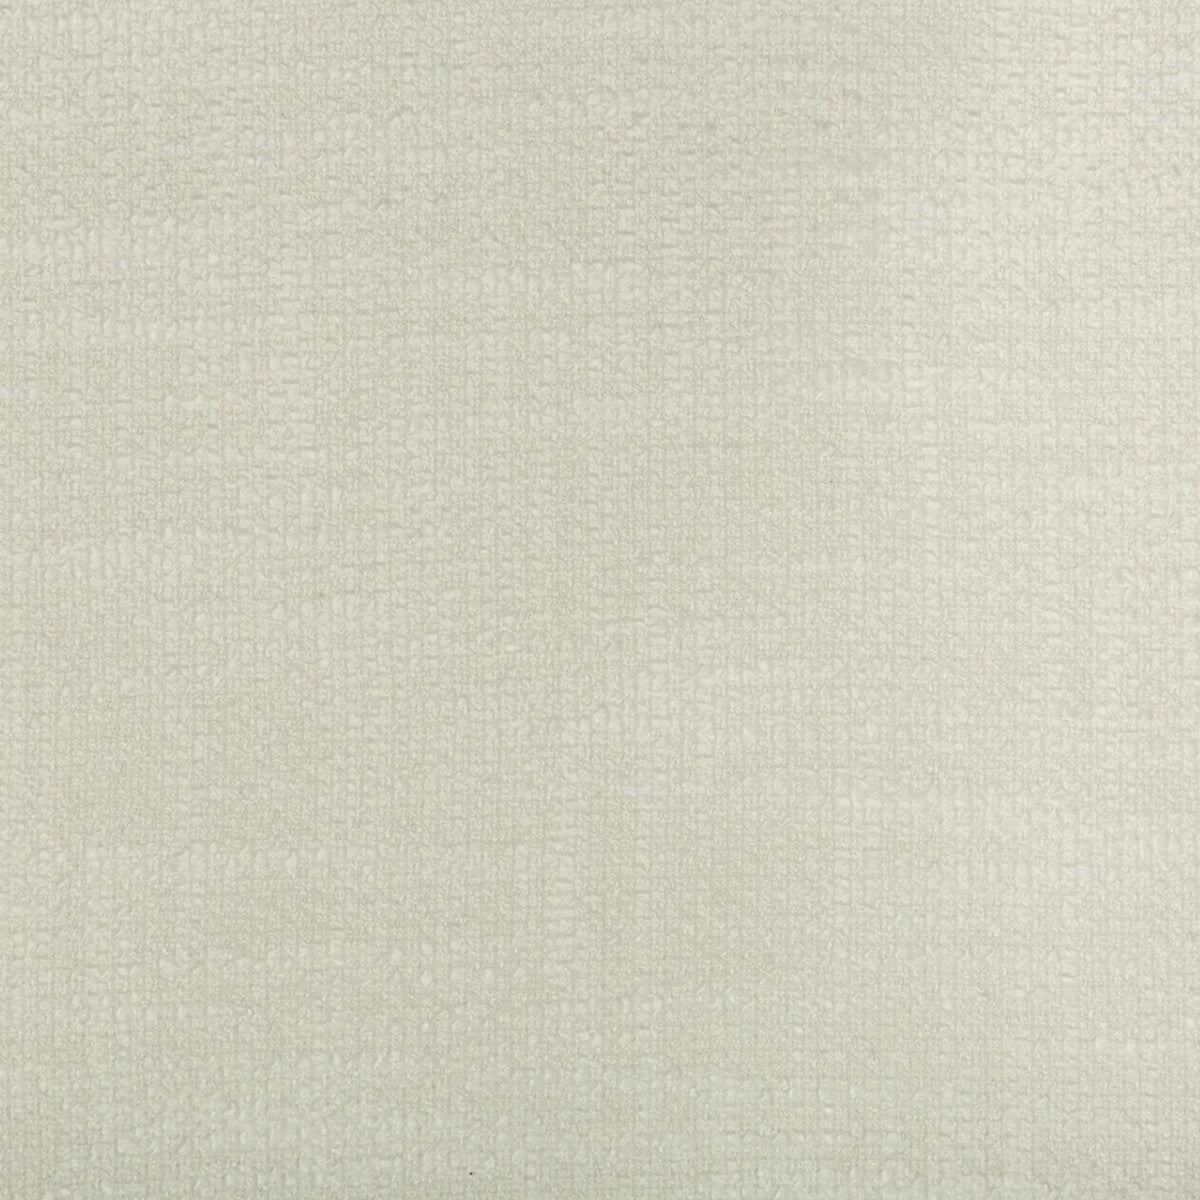 Kravet Basics fabric in 35265-1 color - pattern 35265.1.0 - by Kravet Basics